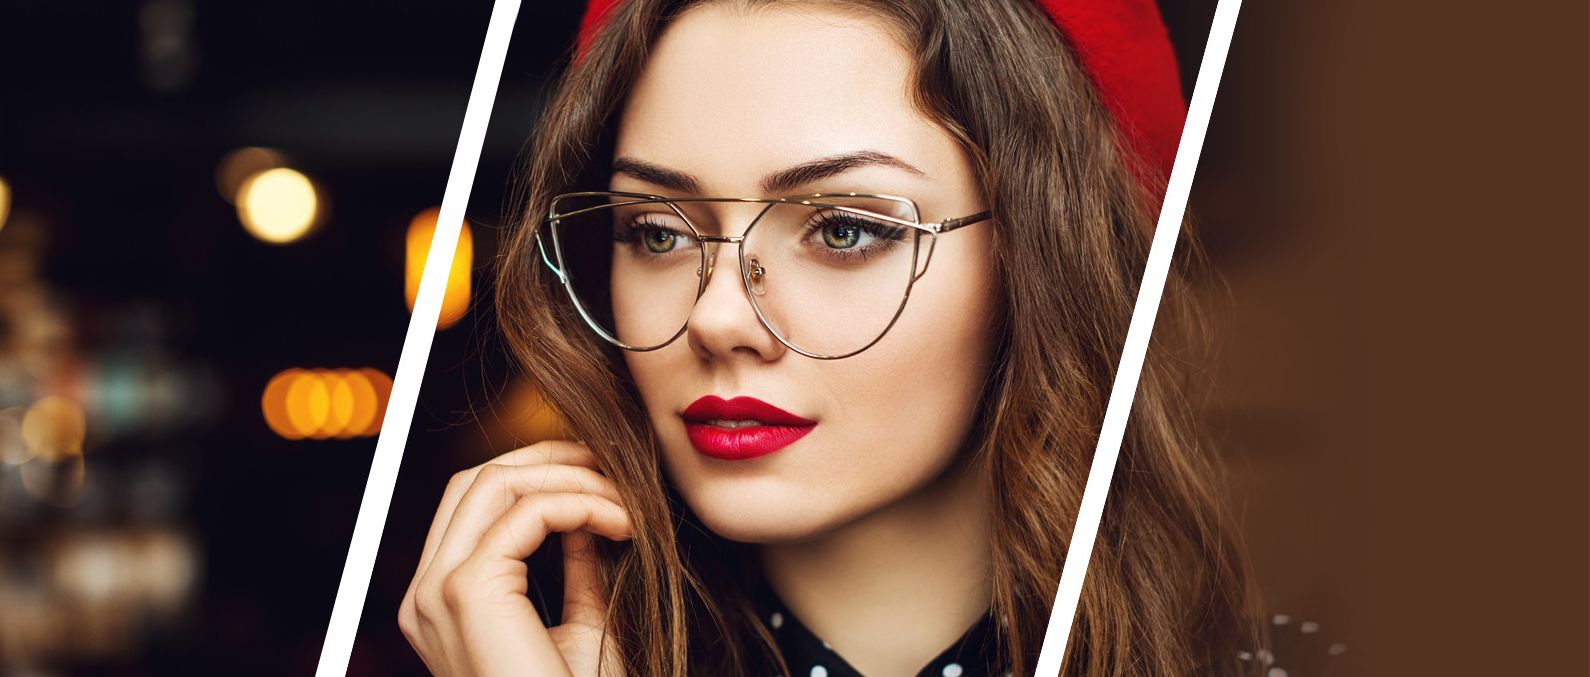 woman in specialty eyeglasses